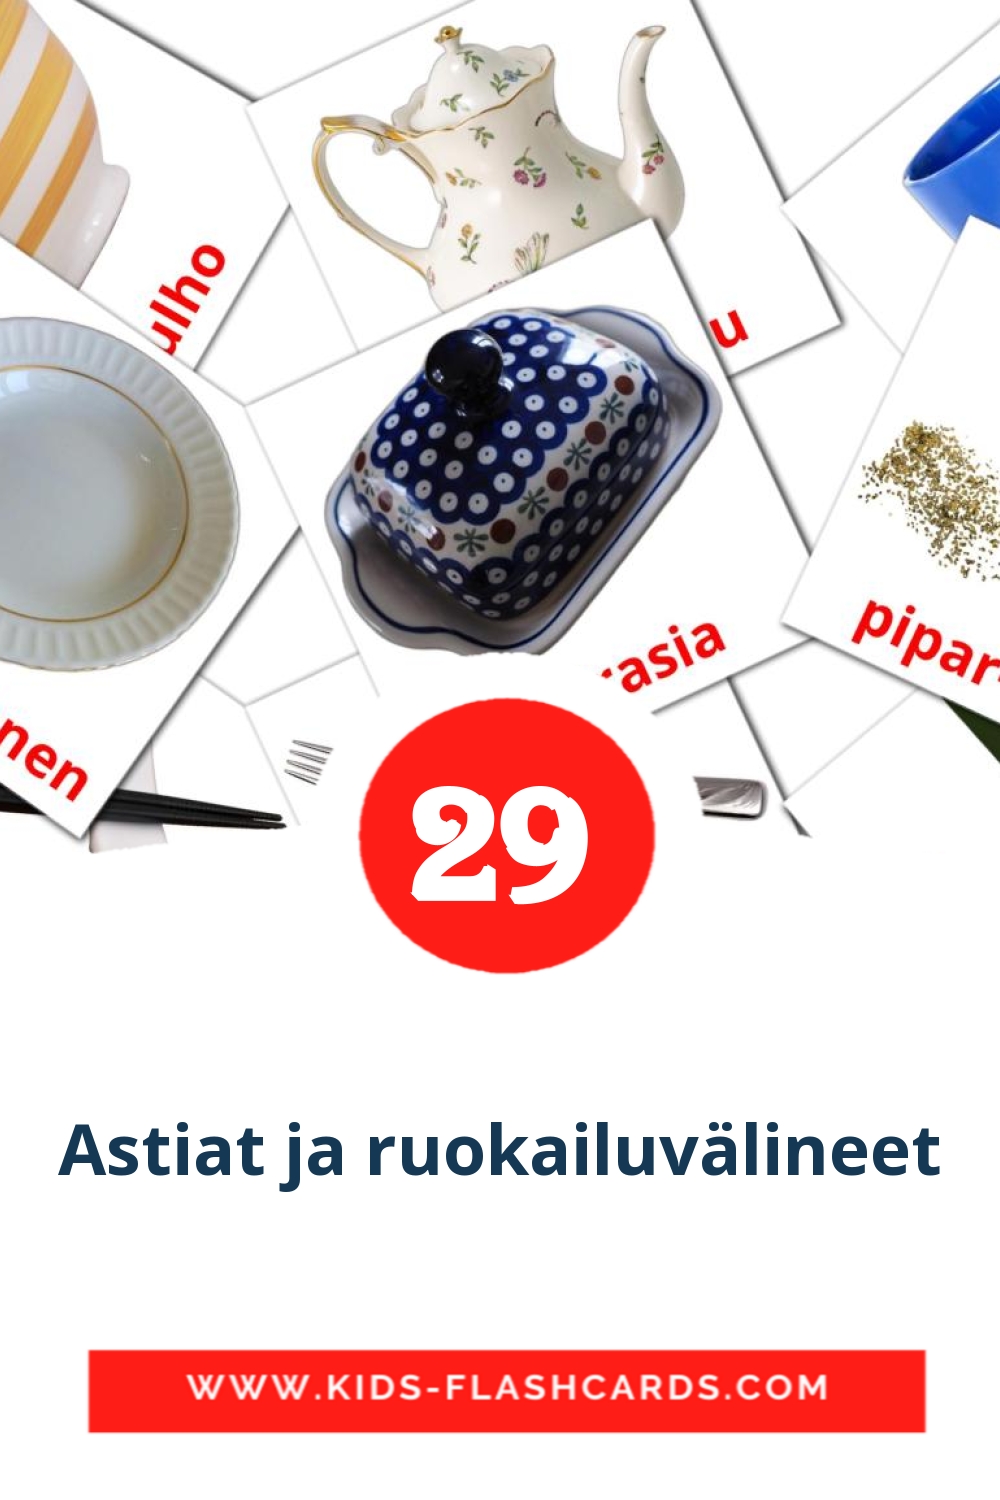 Astiat ja ruokailuvälineet на финском для Детского Сада (29 карточек)